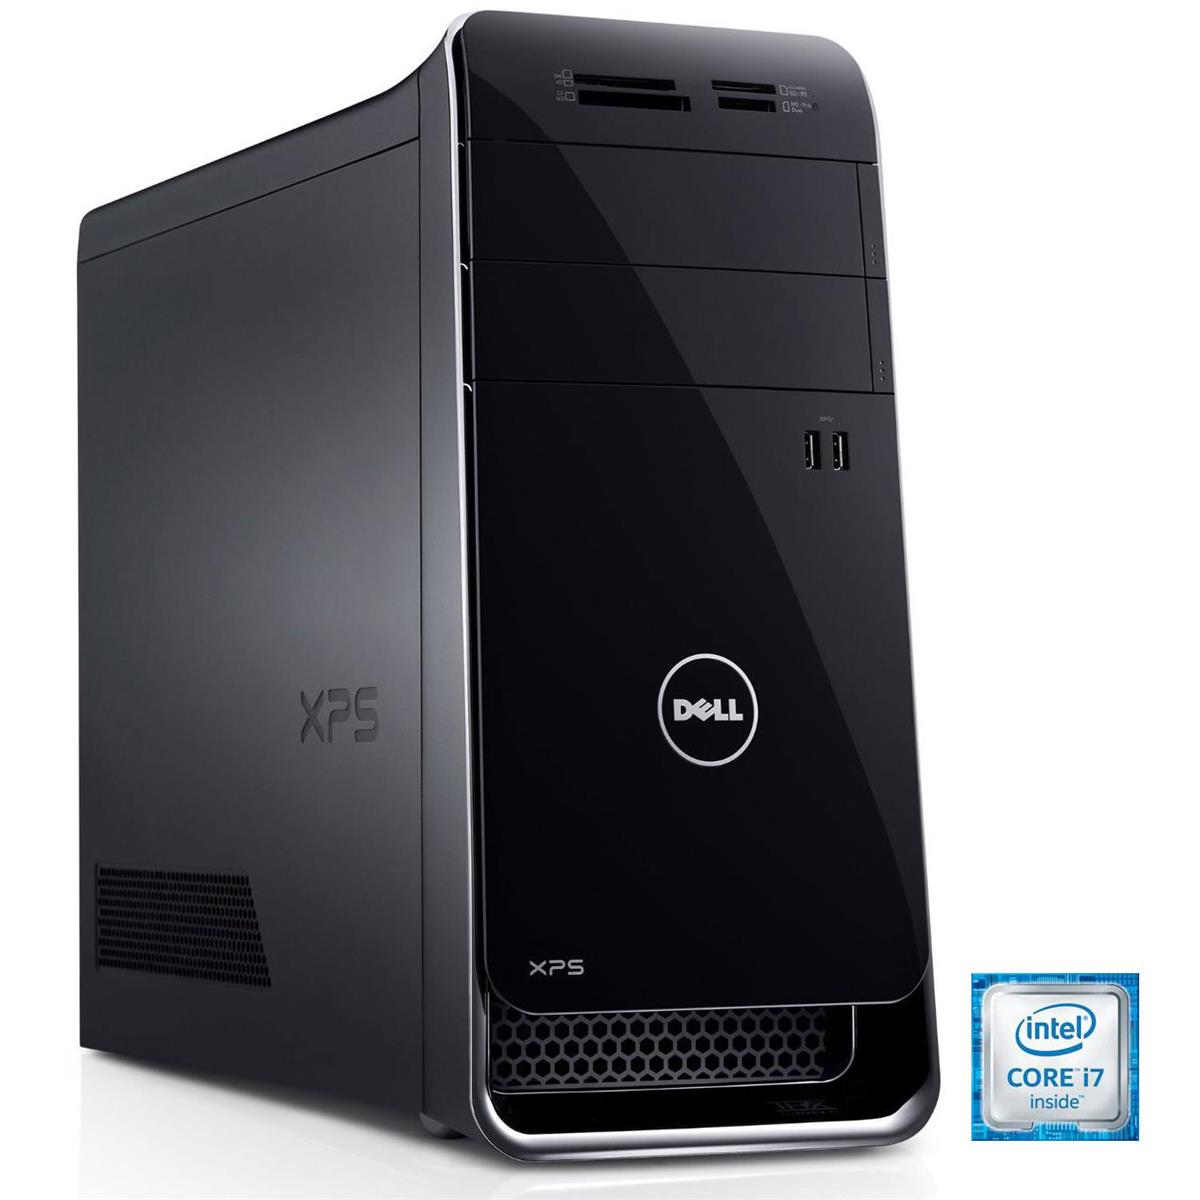 Dell XPS 8900 / Intel Core i7-6th Gen / GTX 745